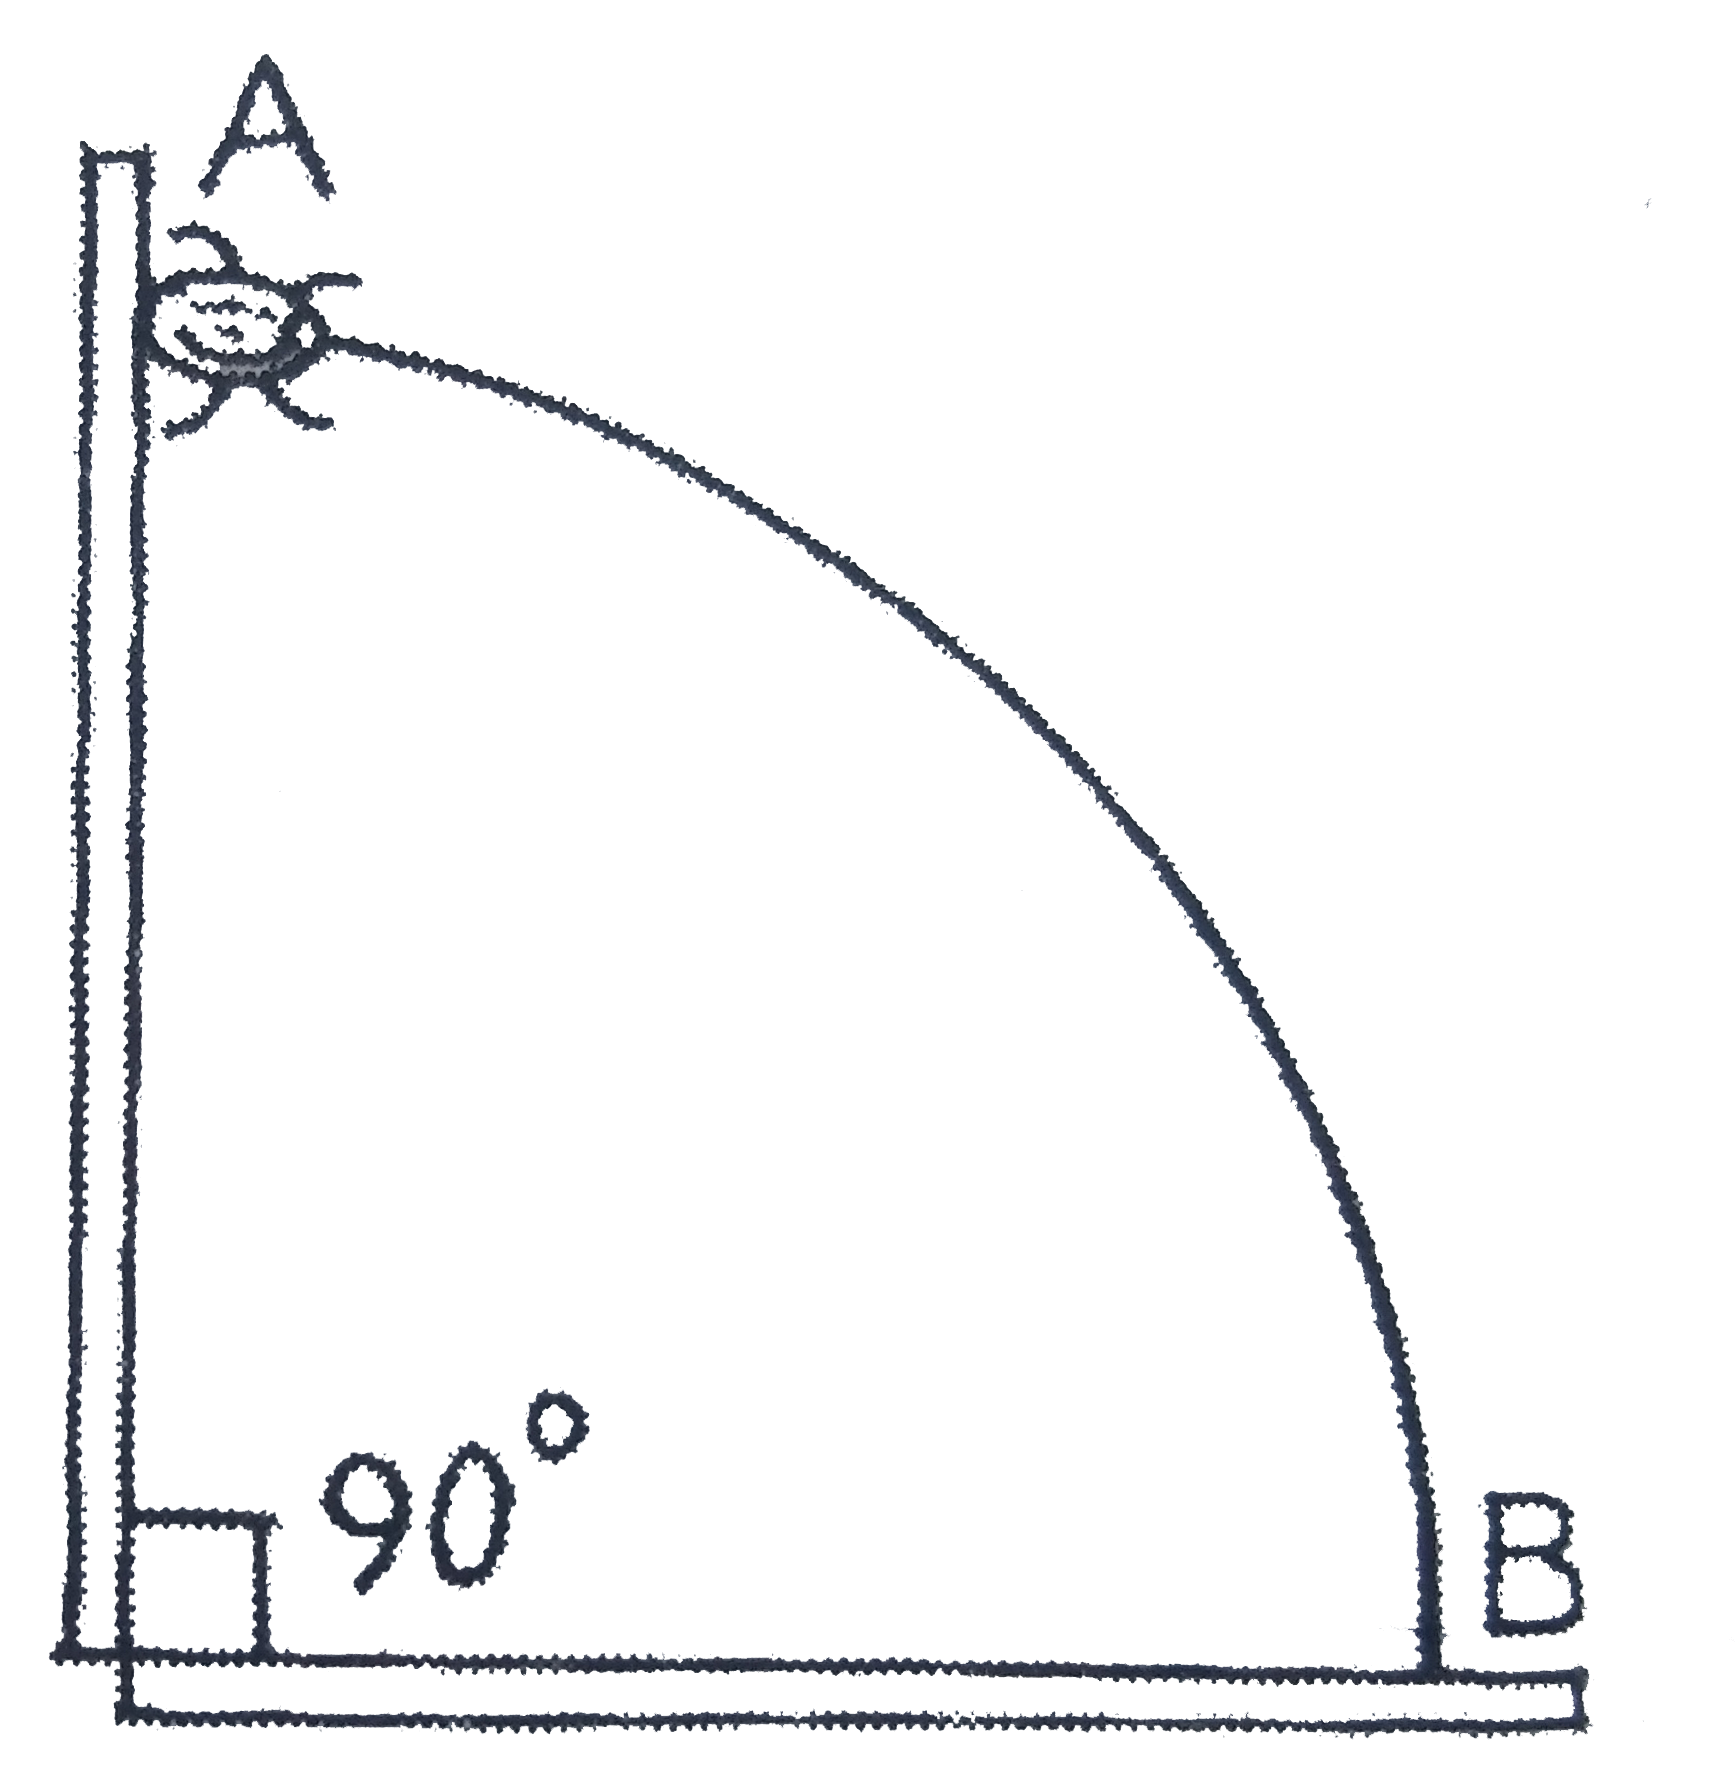 एक तार जो एक छोटे मोती के मध्य में स्थित छिद्र से गुजरता है, तो एक चतुर्श वृत्त के अनुरूप छोड़ा गया है। तार को भूमि पर उधर्व ताल में स्थित किया गया है जैसा चित्र में दर्शाया गया है। मोती को तार के ऊपरी सिरे से छडा जाता है, जिससे यह तार के अनुदिश बिना किसी घर्षण के सरकता है। जब मोती A से B तक सरकता है, तब इसके द्वारा तार पर लगने वाला बल है: